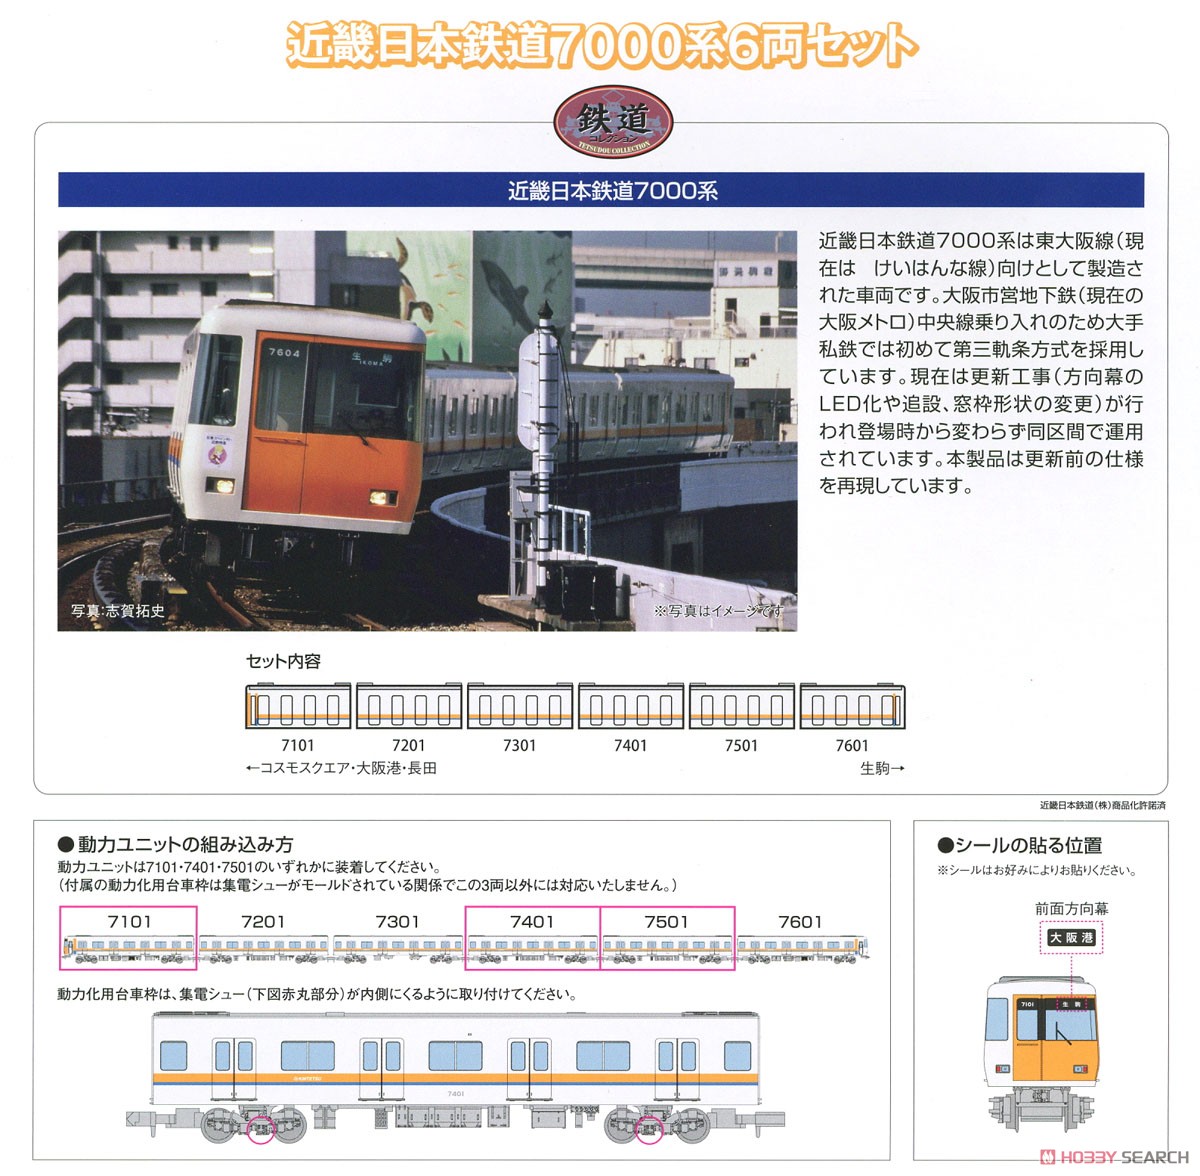 鉄道コレクション 近畿日本鉄道 7000系 (6両セット) (鉄道模型) 解説1